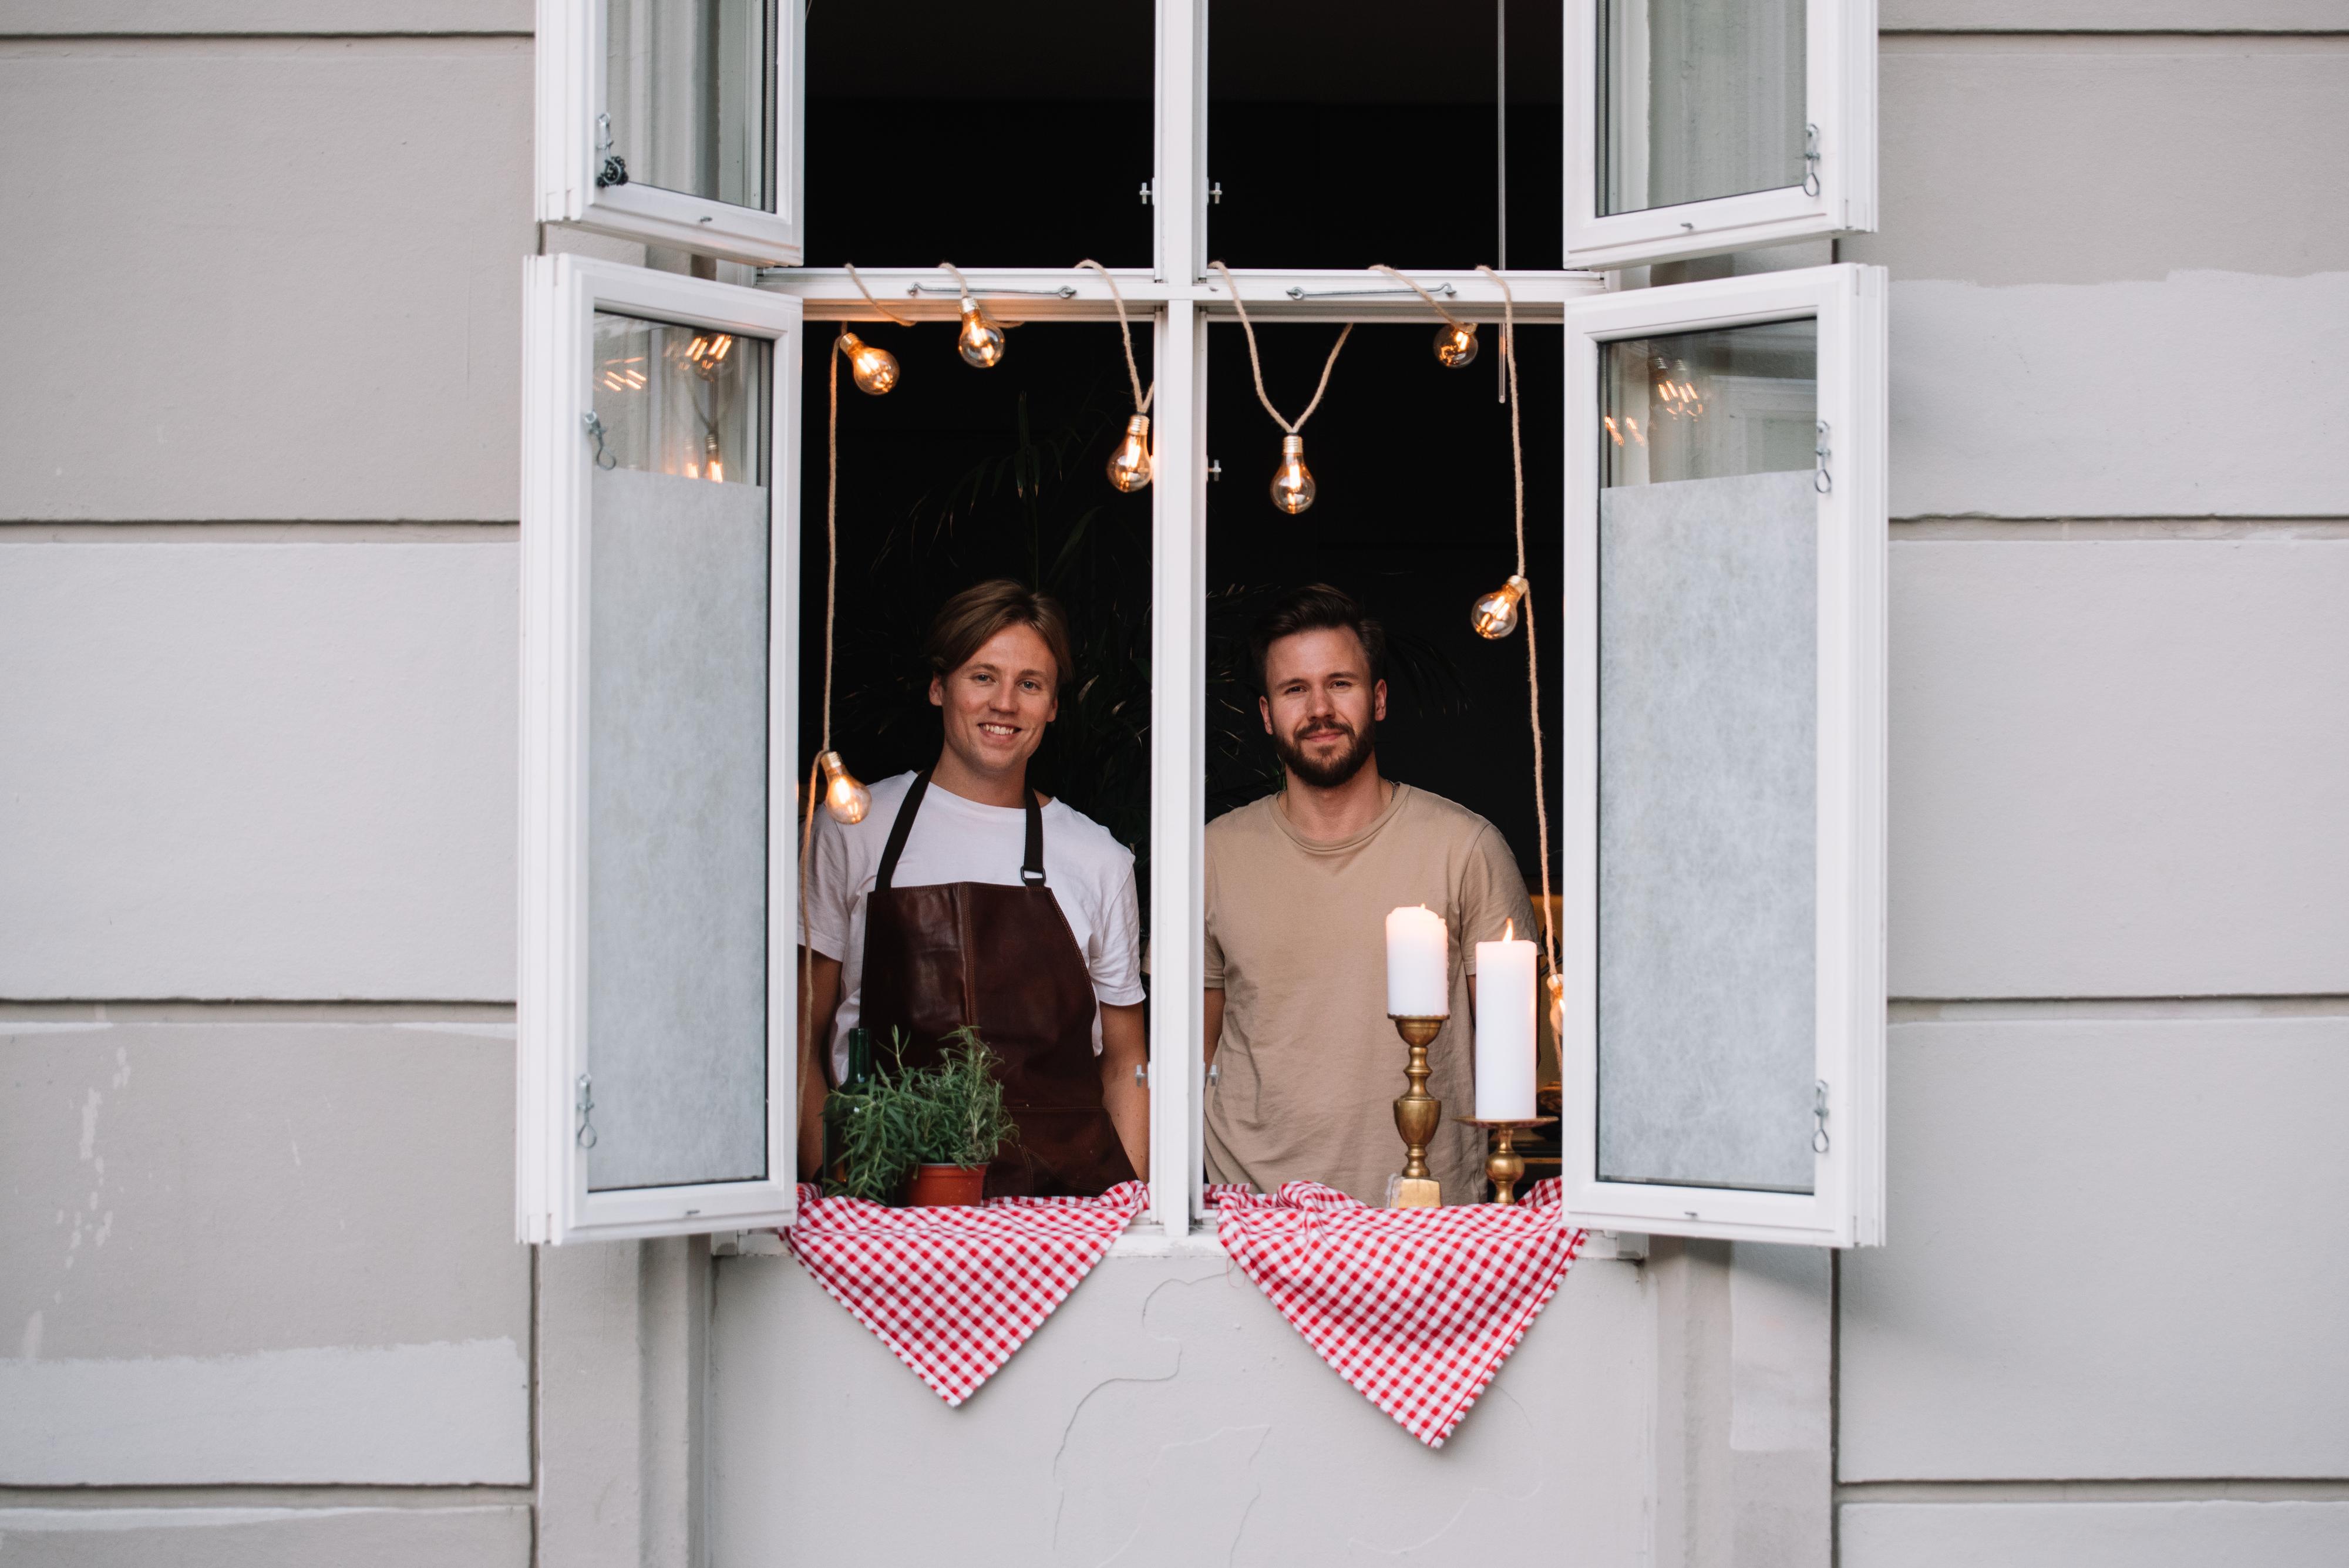 ELSKER GJESTER: Magnus Liøkel (30) og Ole Kristian Samuelsen (26) elsker å lage mat og invitere gjester. Selv i corona-tiden inviterte de på måltider. Da åpnet de kjøkkenvinduene ut mot gaten og lot venner få en gate-restaurantopplevelse.